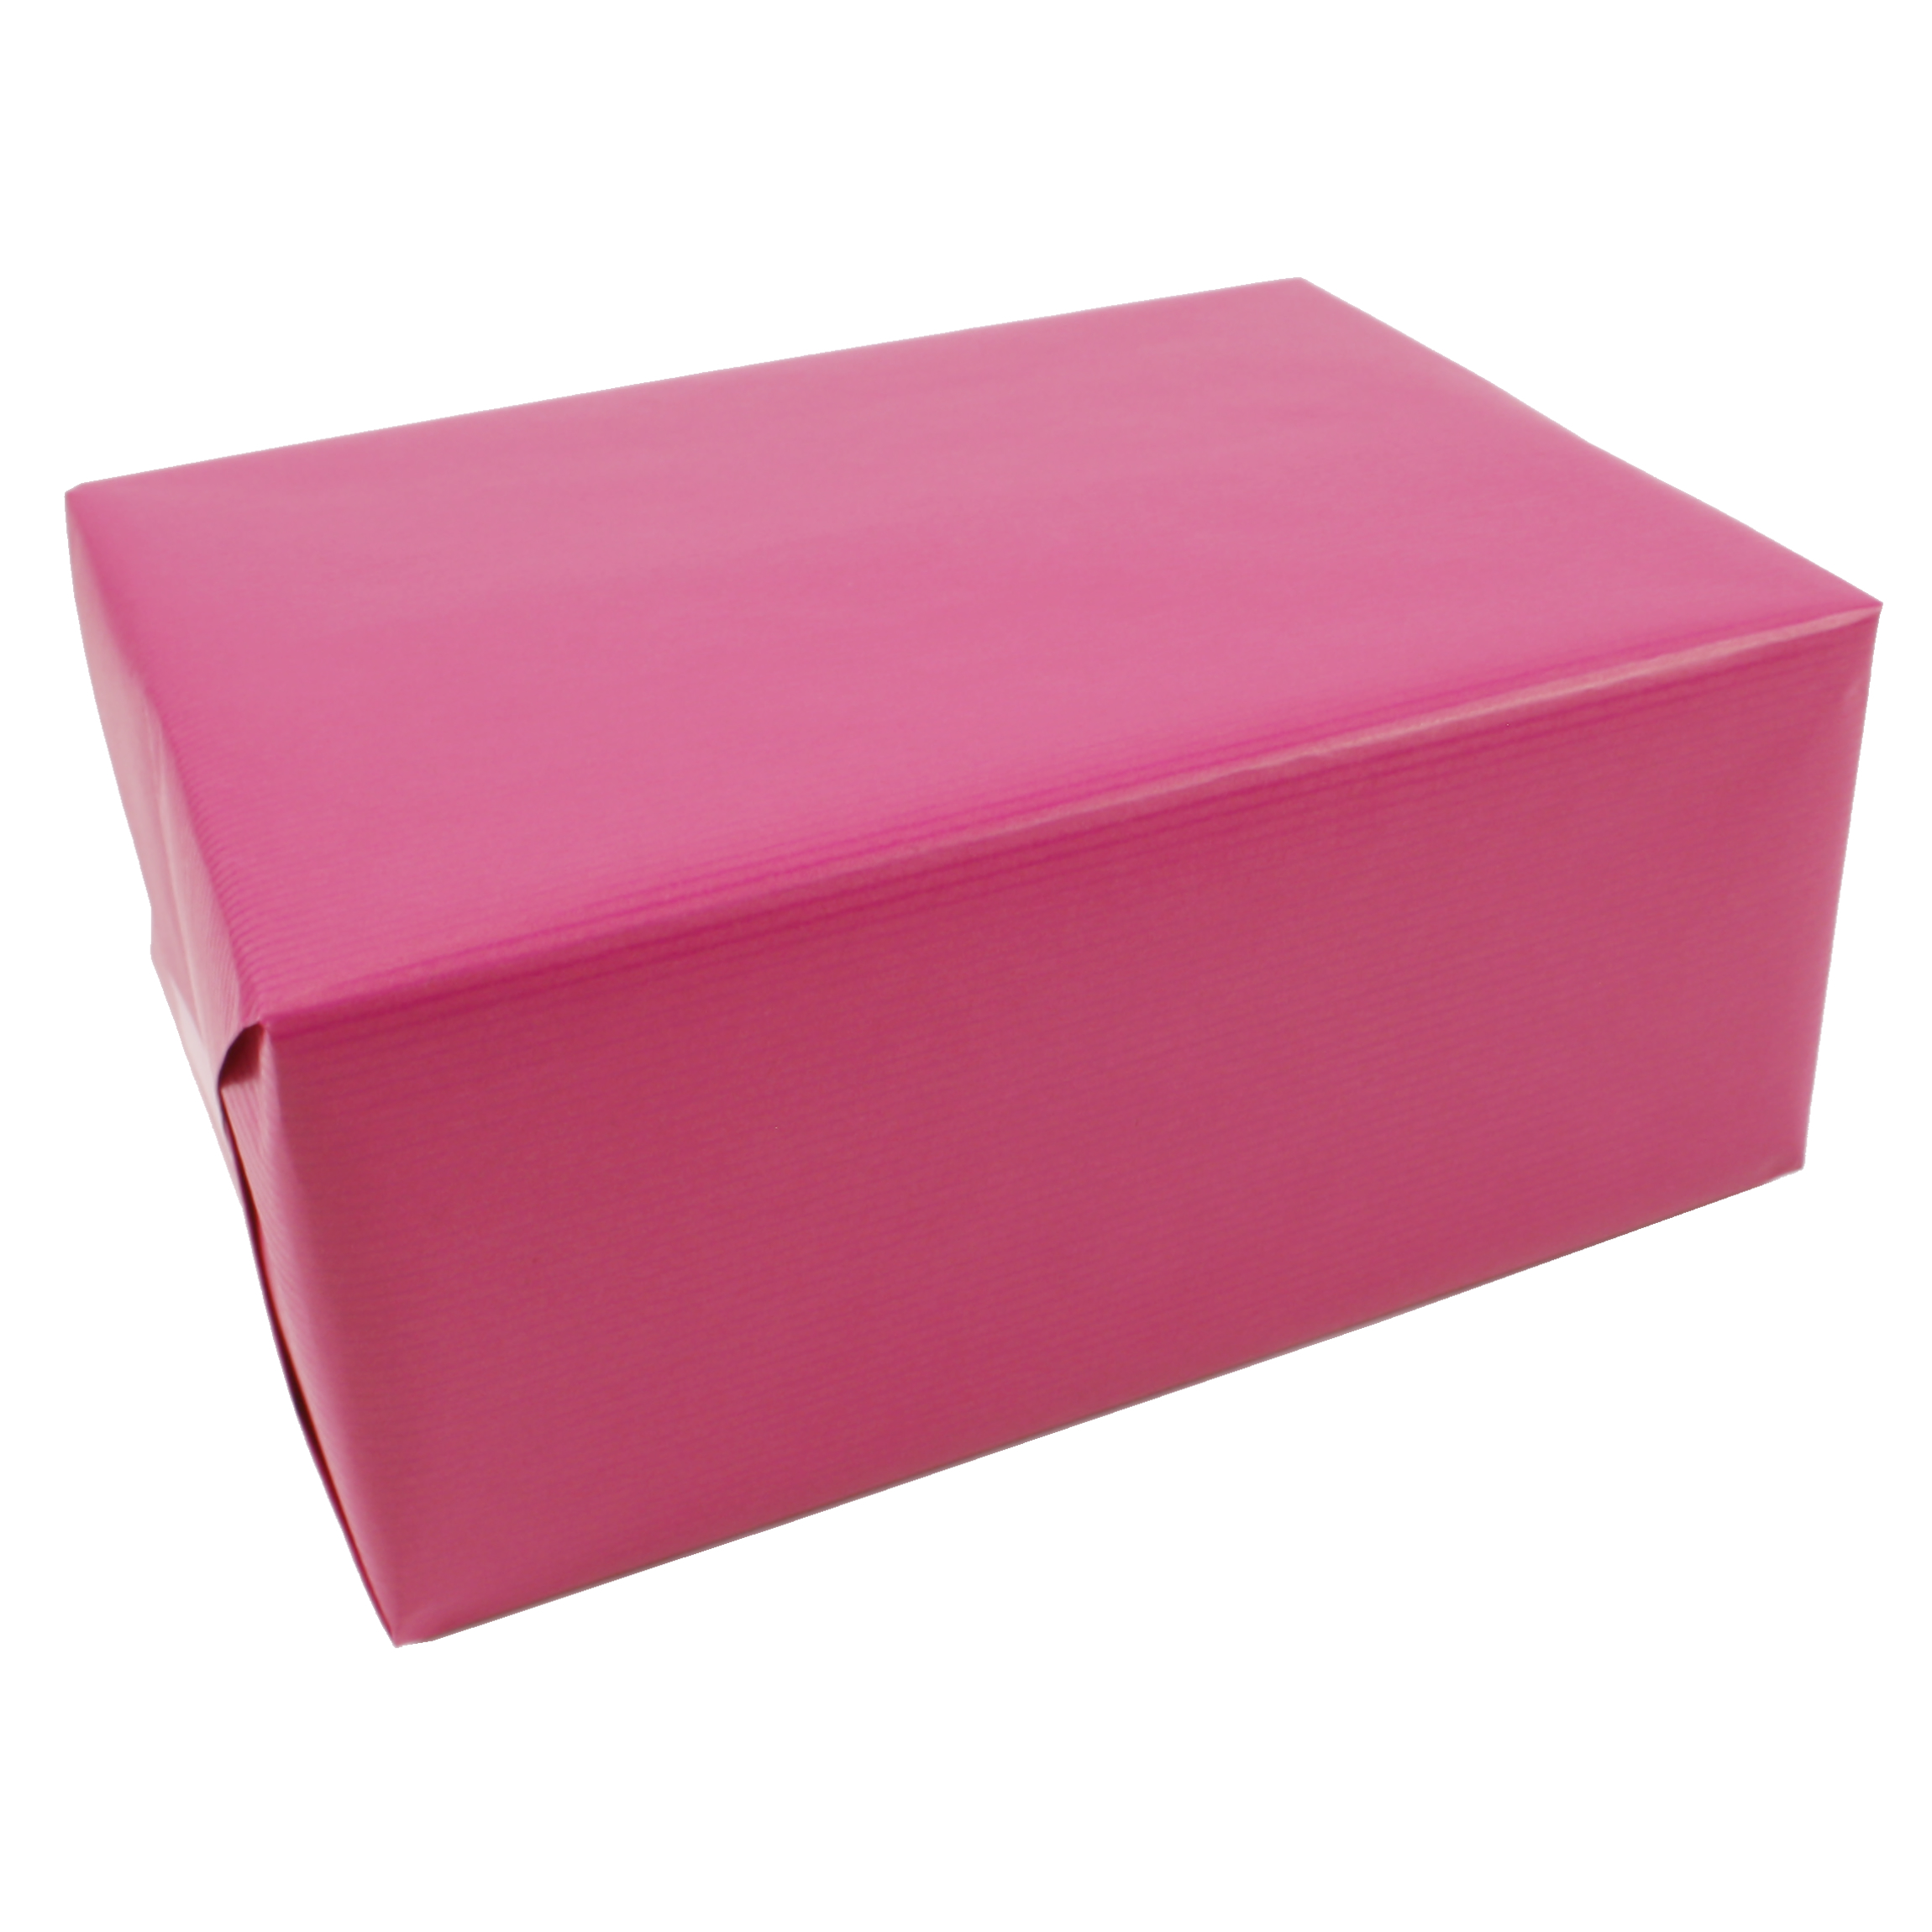 Kraftpapier pink dubbelzijdig 50 cm (125 meter)